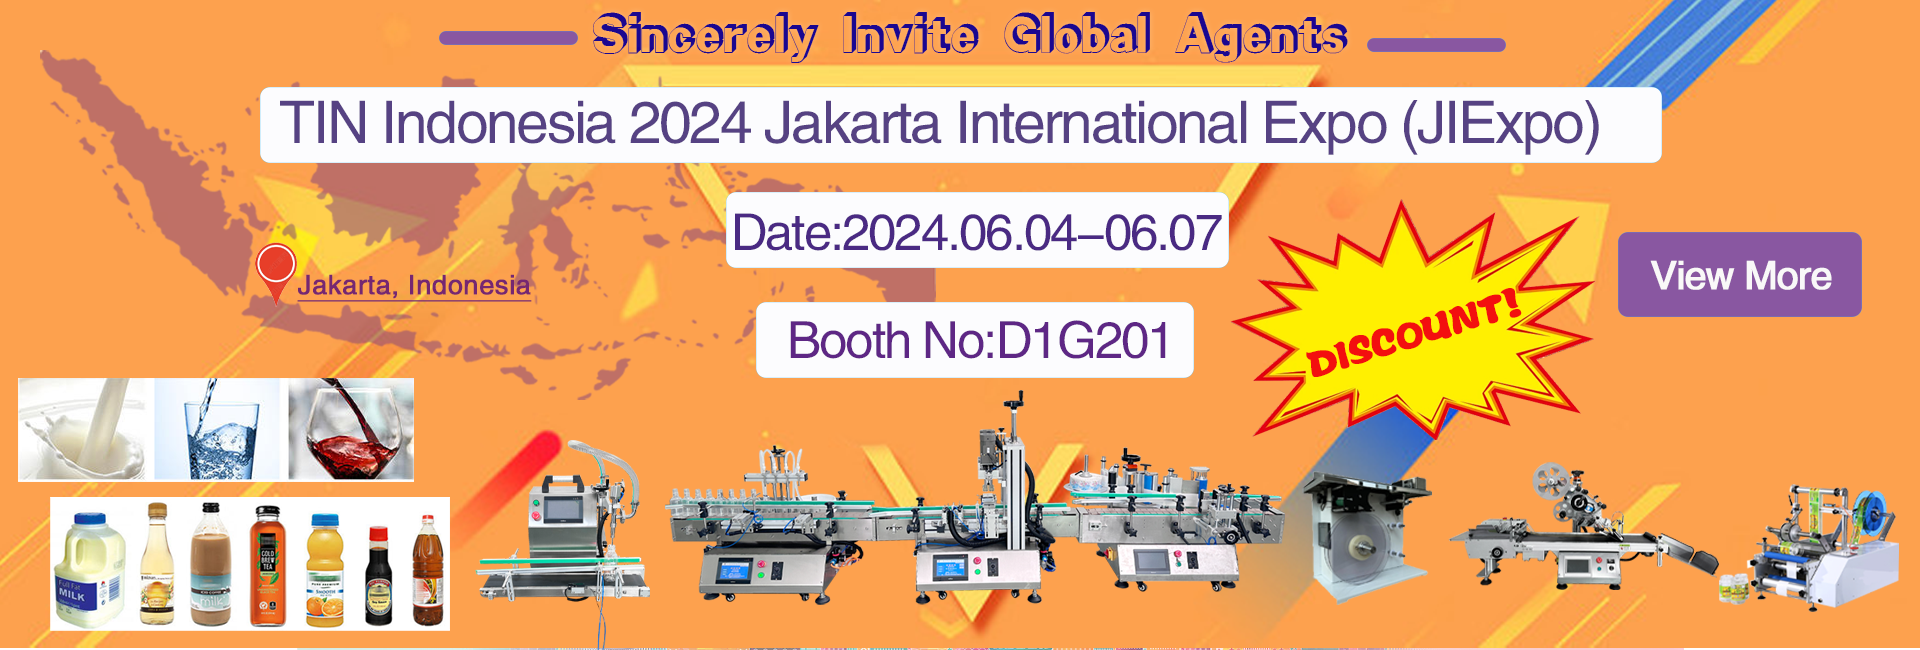 TIN Indonesia 2024 Jakarta International Expo (JlExpo)-Feibin